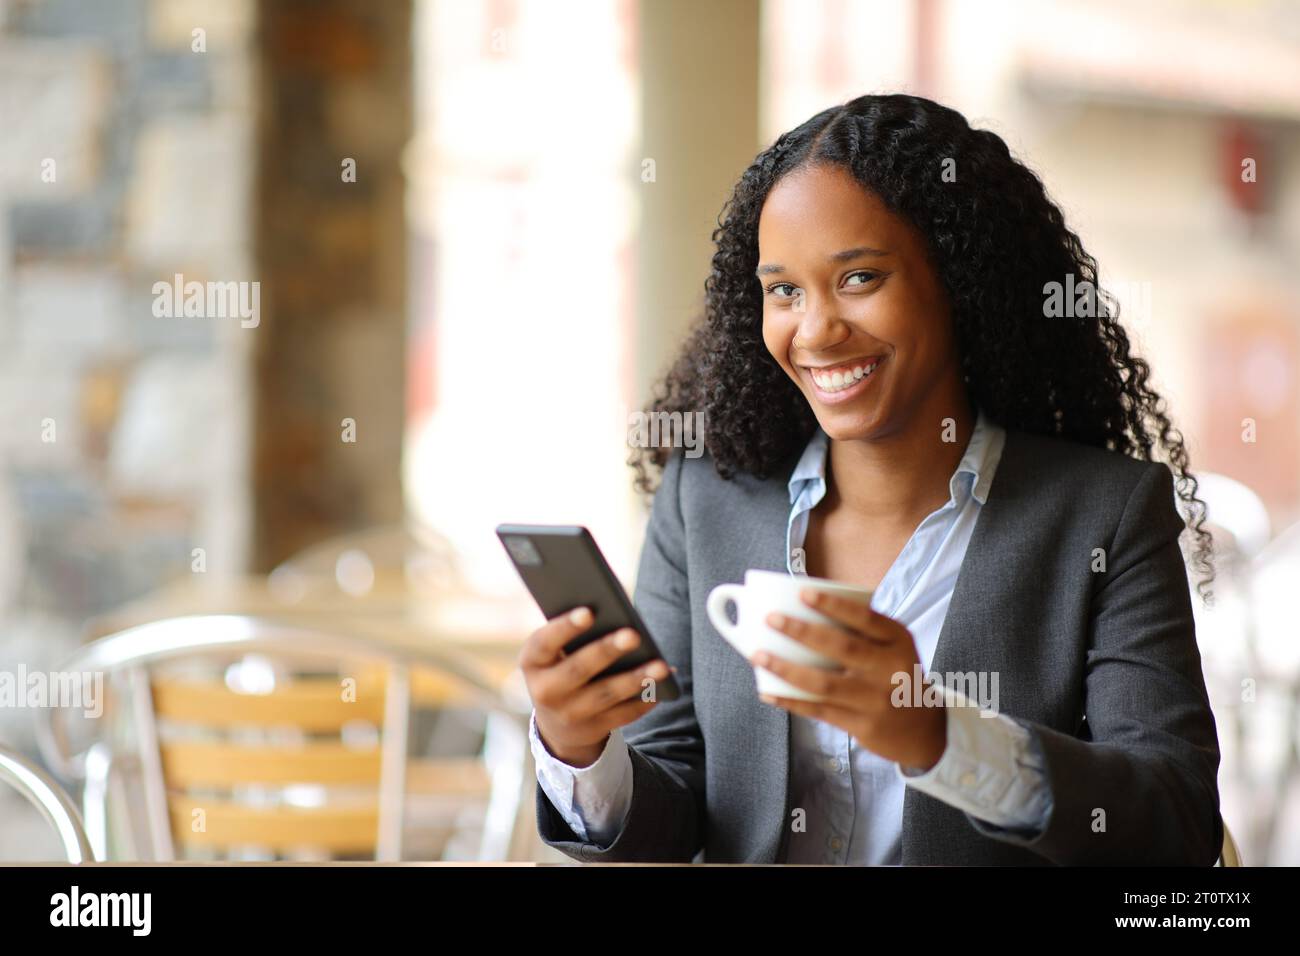 Heureux exécutif noir tenant téléphone intelligent et tasse à café posant en regardant la caméra dans un restaurant Banque D'Images